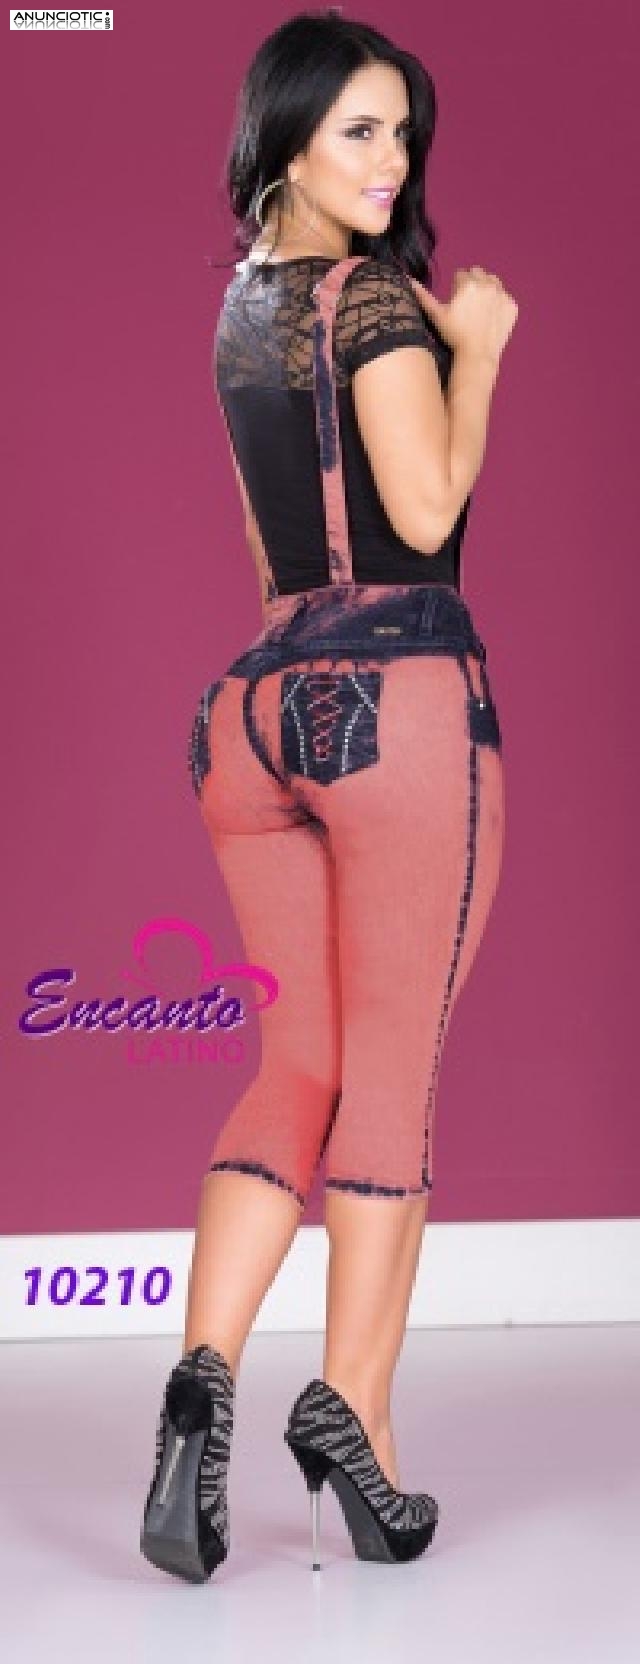 Variedad de Jeans para que Luzcas con EncantoLatino.es